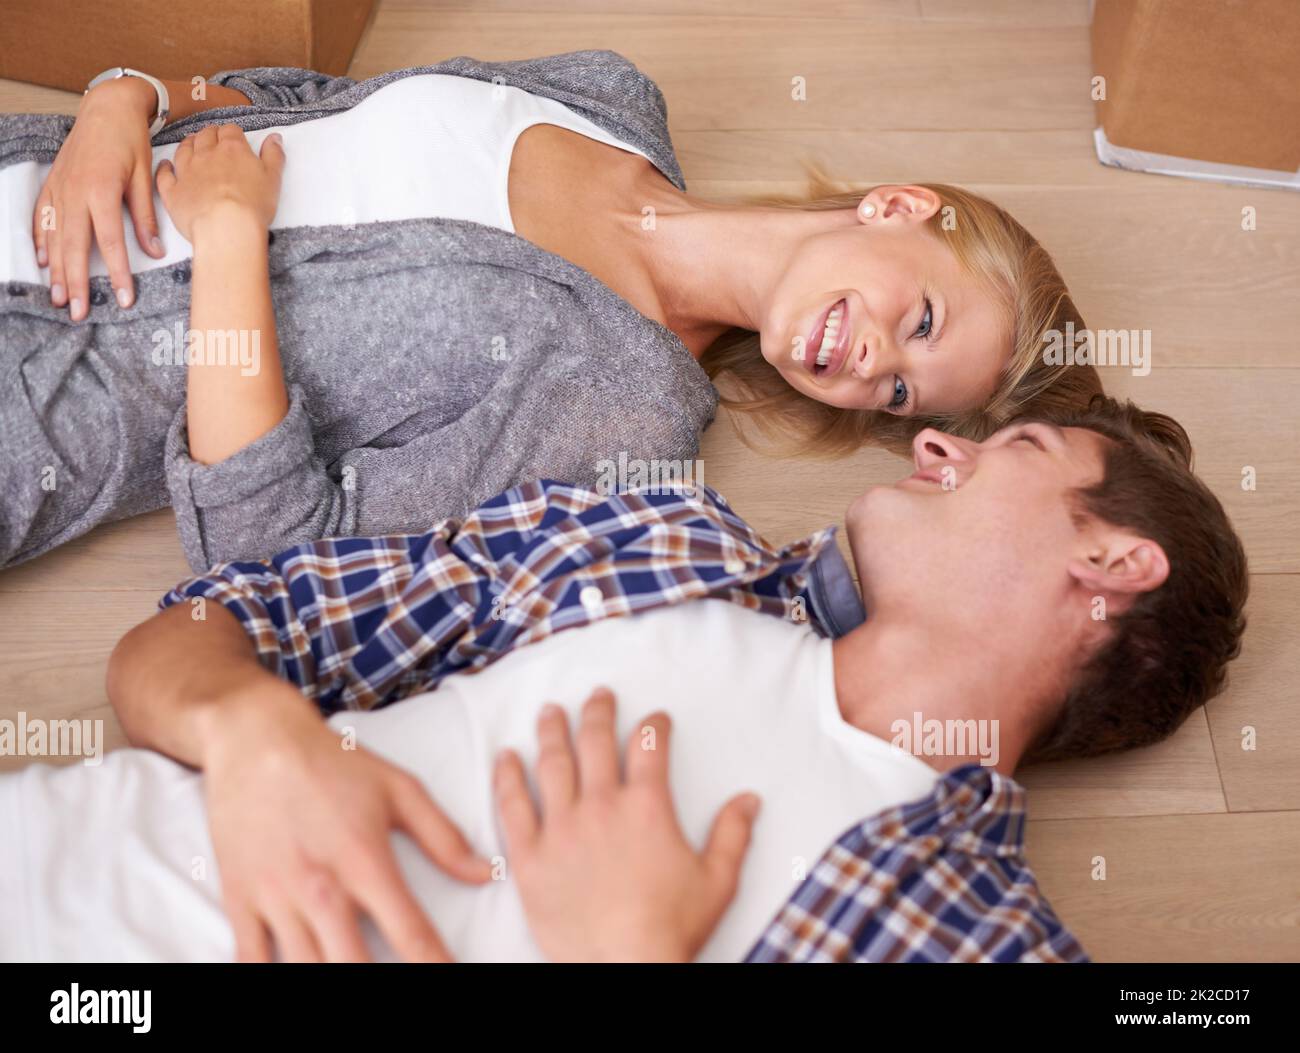 Der Umzug macht mich müde. Aufnahme eines Paares, das nach einem langen Tag voller Umzug glücklich auf dem Boden lag. Stockfoto